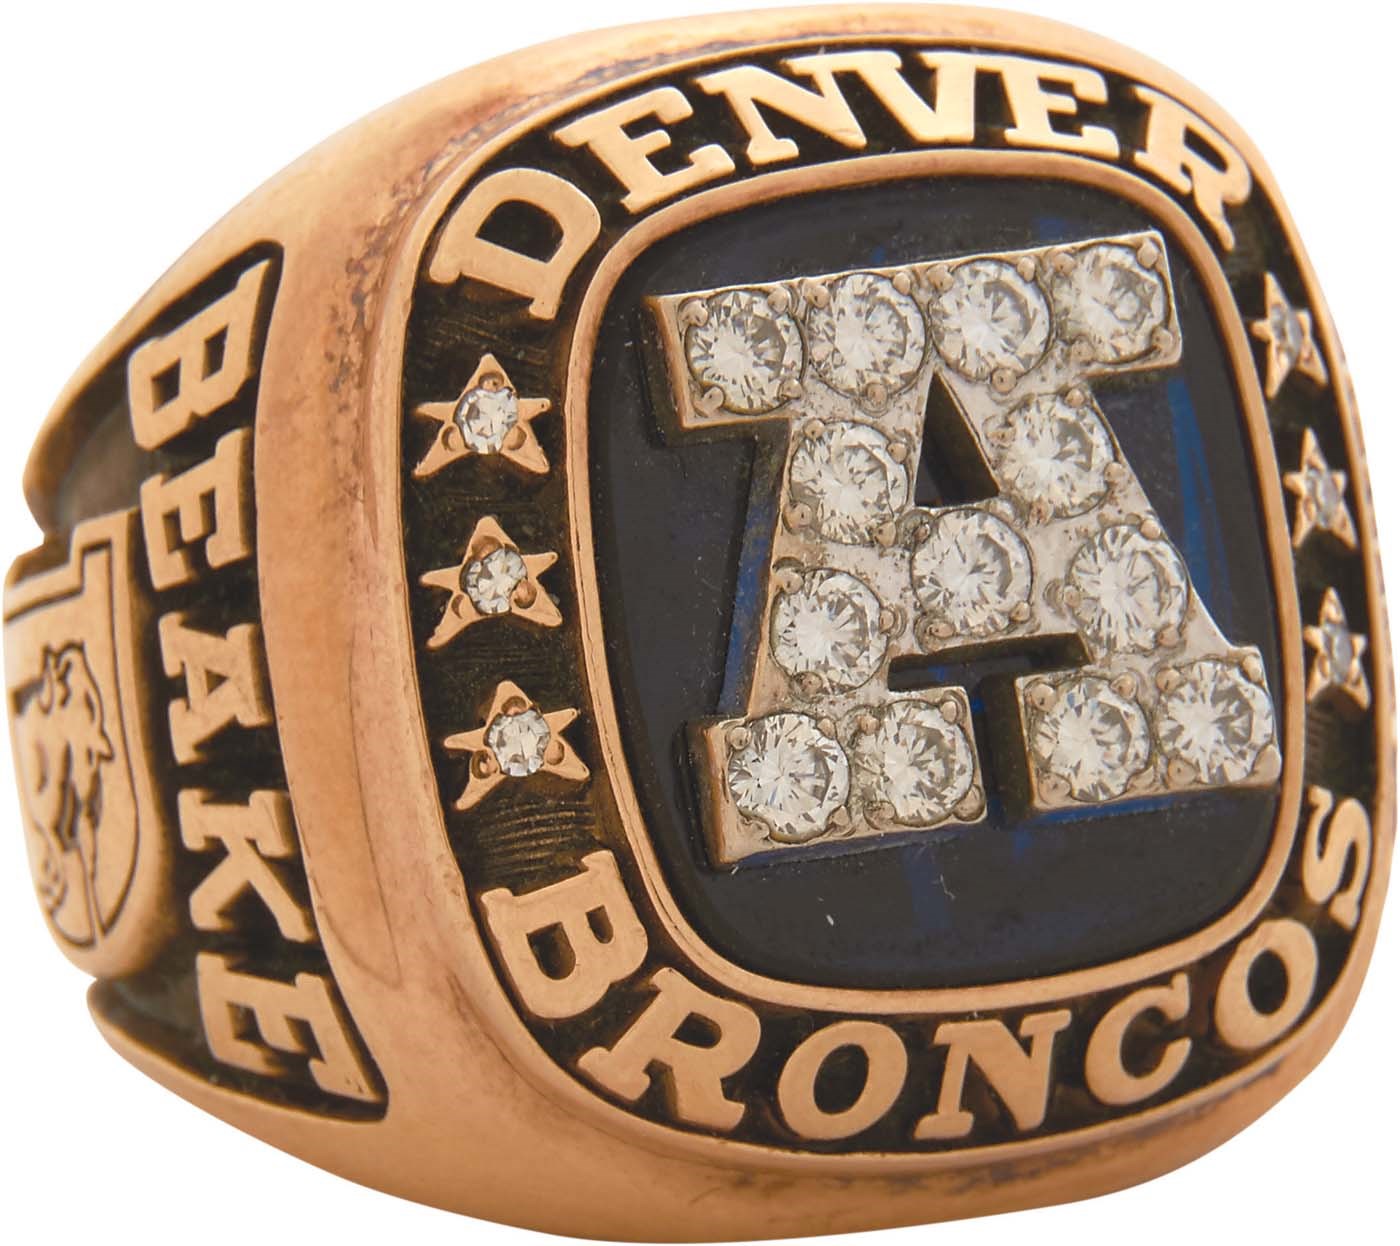 1986 Denver Broncos AFC Championship Ring Presented to GM John Beake